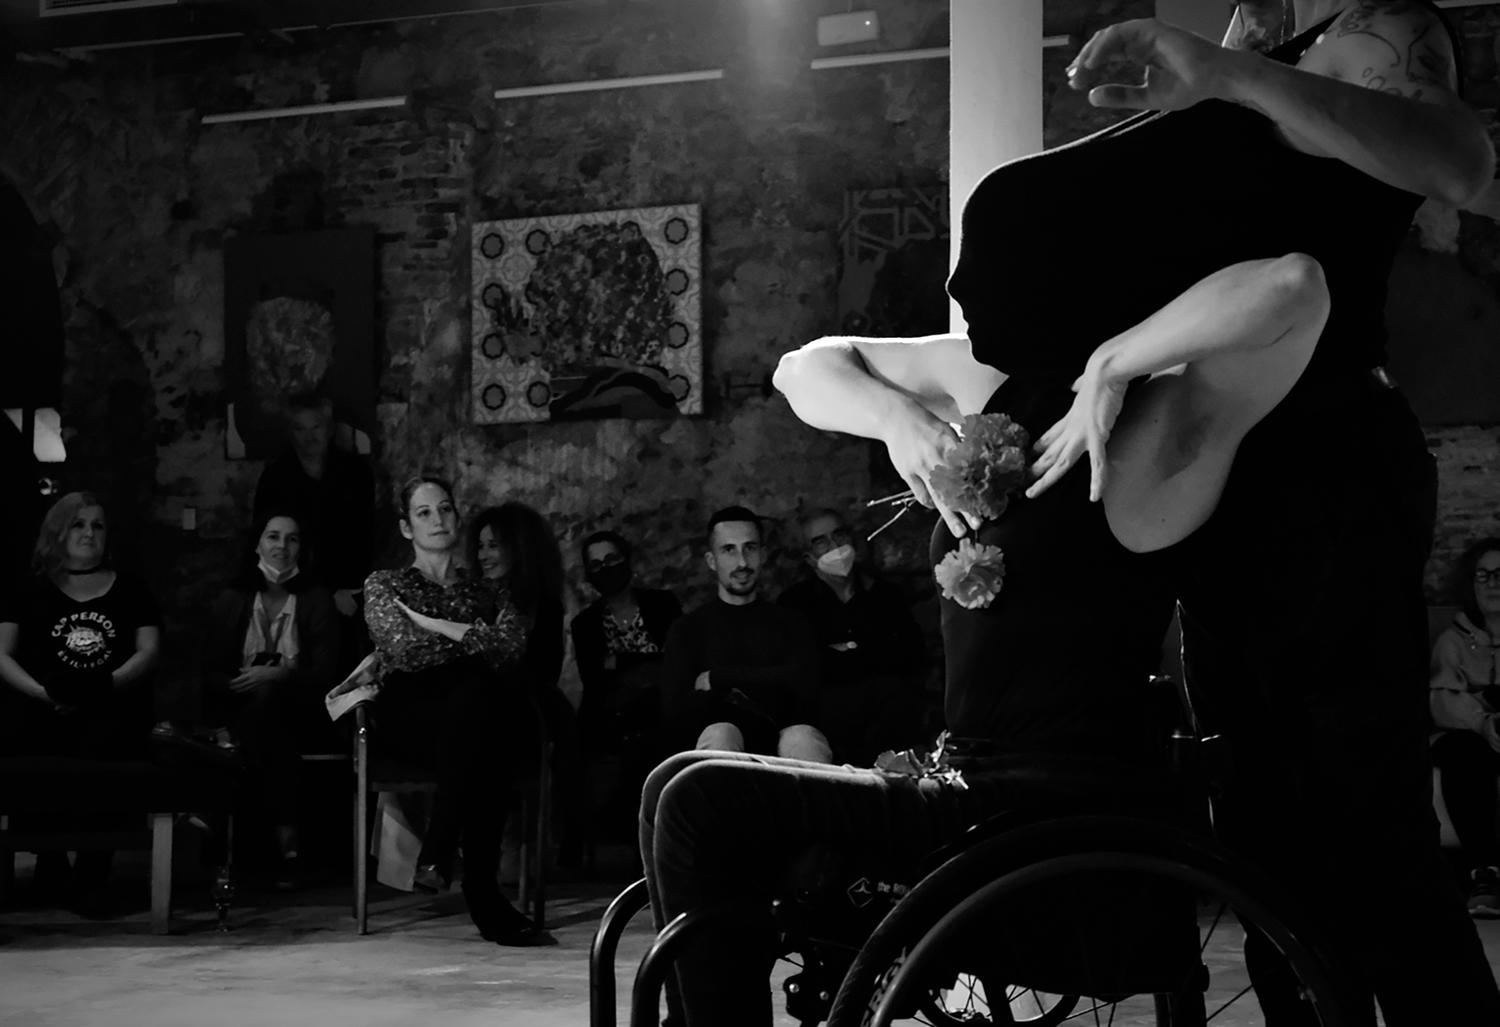 Eine Schwarz-Weiss-Fotografie zeigt eine von der Seite abgebildete tanzende Person, die im Rollstuhl sitzt. Die Hände sind zur Brust gewendet und halten Blumen. Das Gesicht ist vollständig von einem schwarzen Stoff bedeckt. Im Hintergrund ist ein Publikum zu erkennen. 